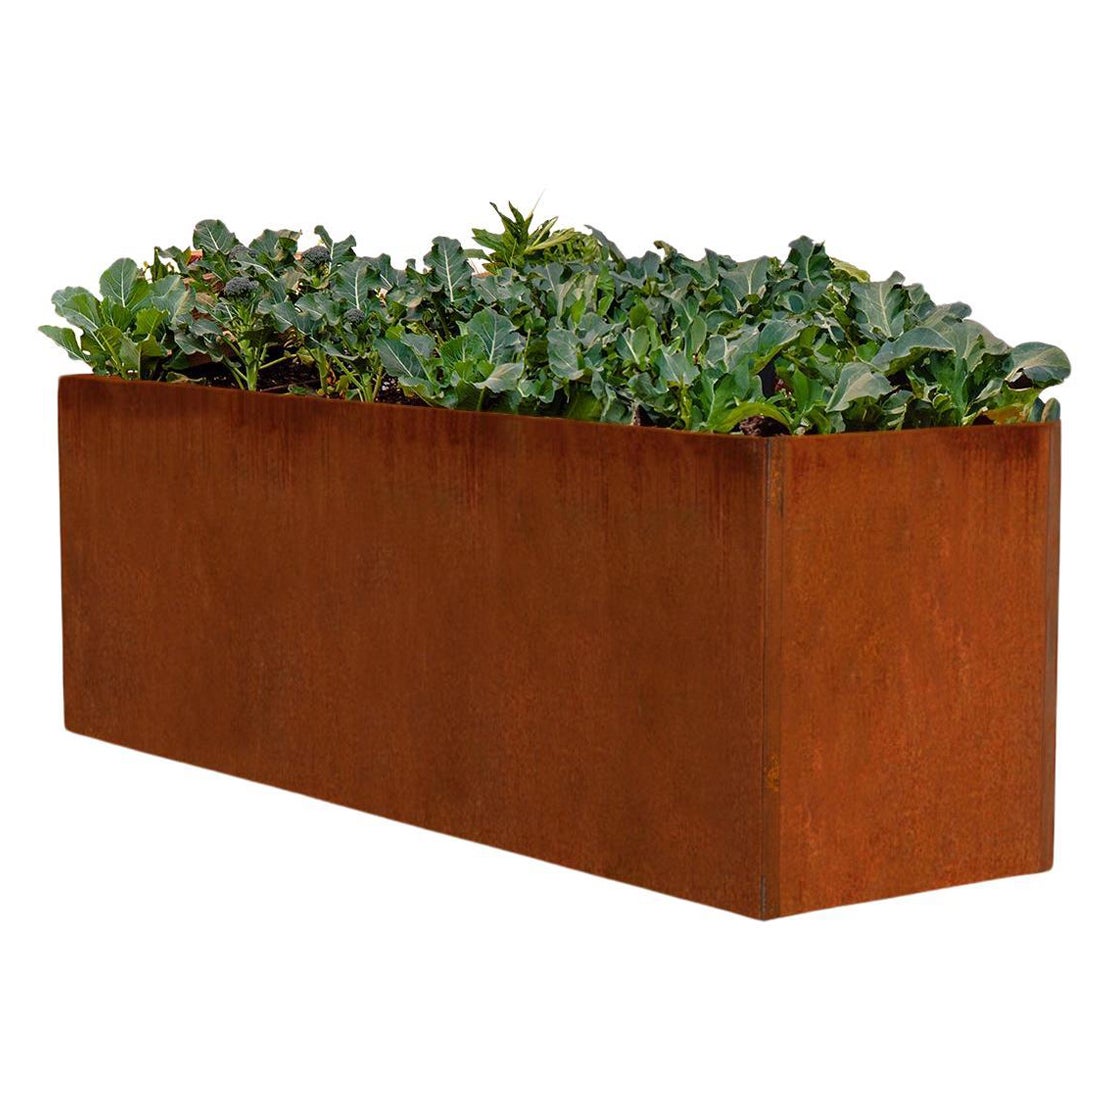 Corten Steel Planter or Edible Garden Box (6.5' X 2' X 2.5') For Sale